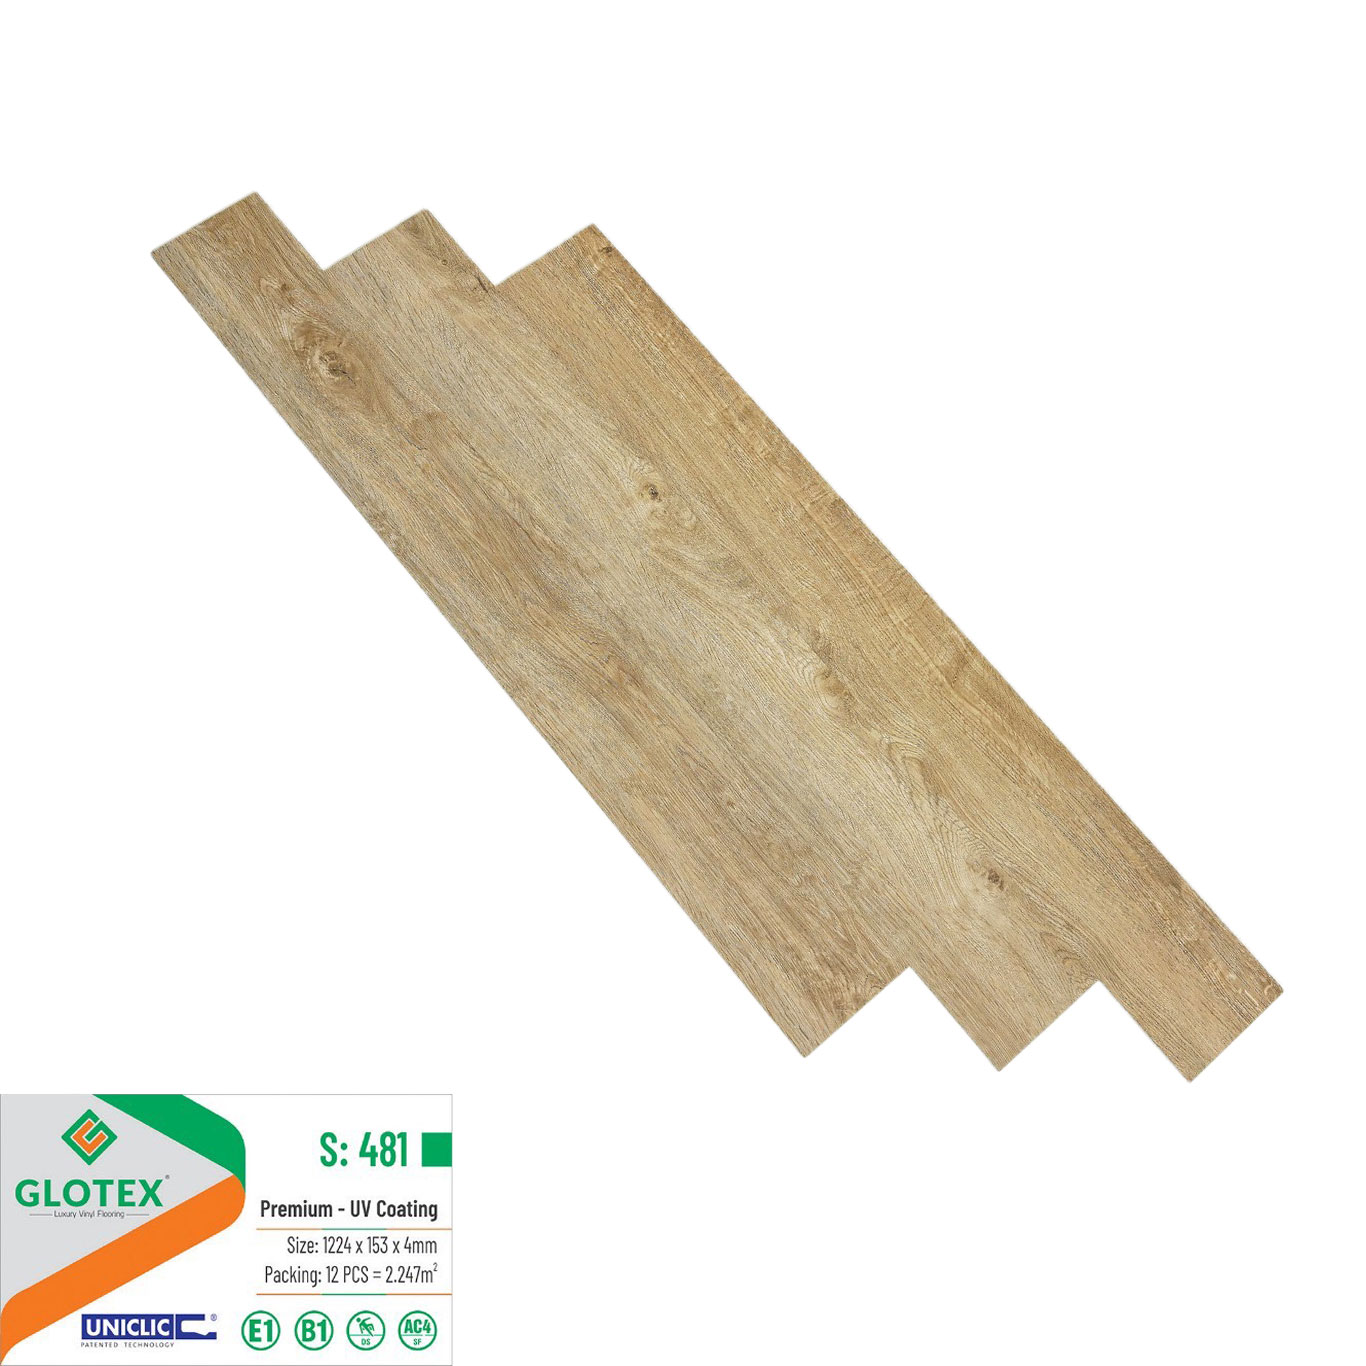 Sàn Nhựa Glotex 4mm - Sàn nhựa giả gỗ chính hãng Glotex